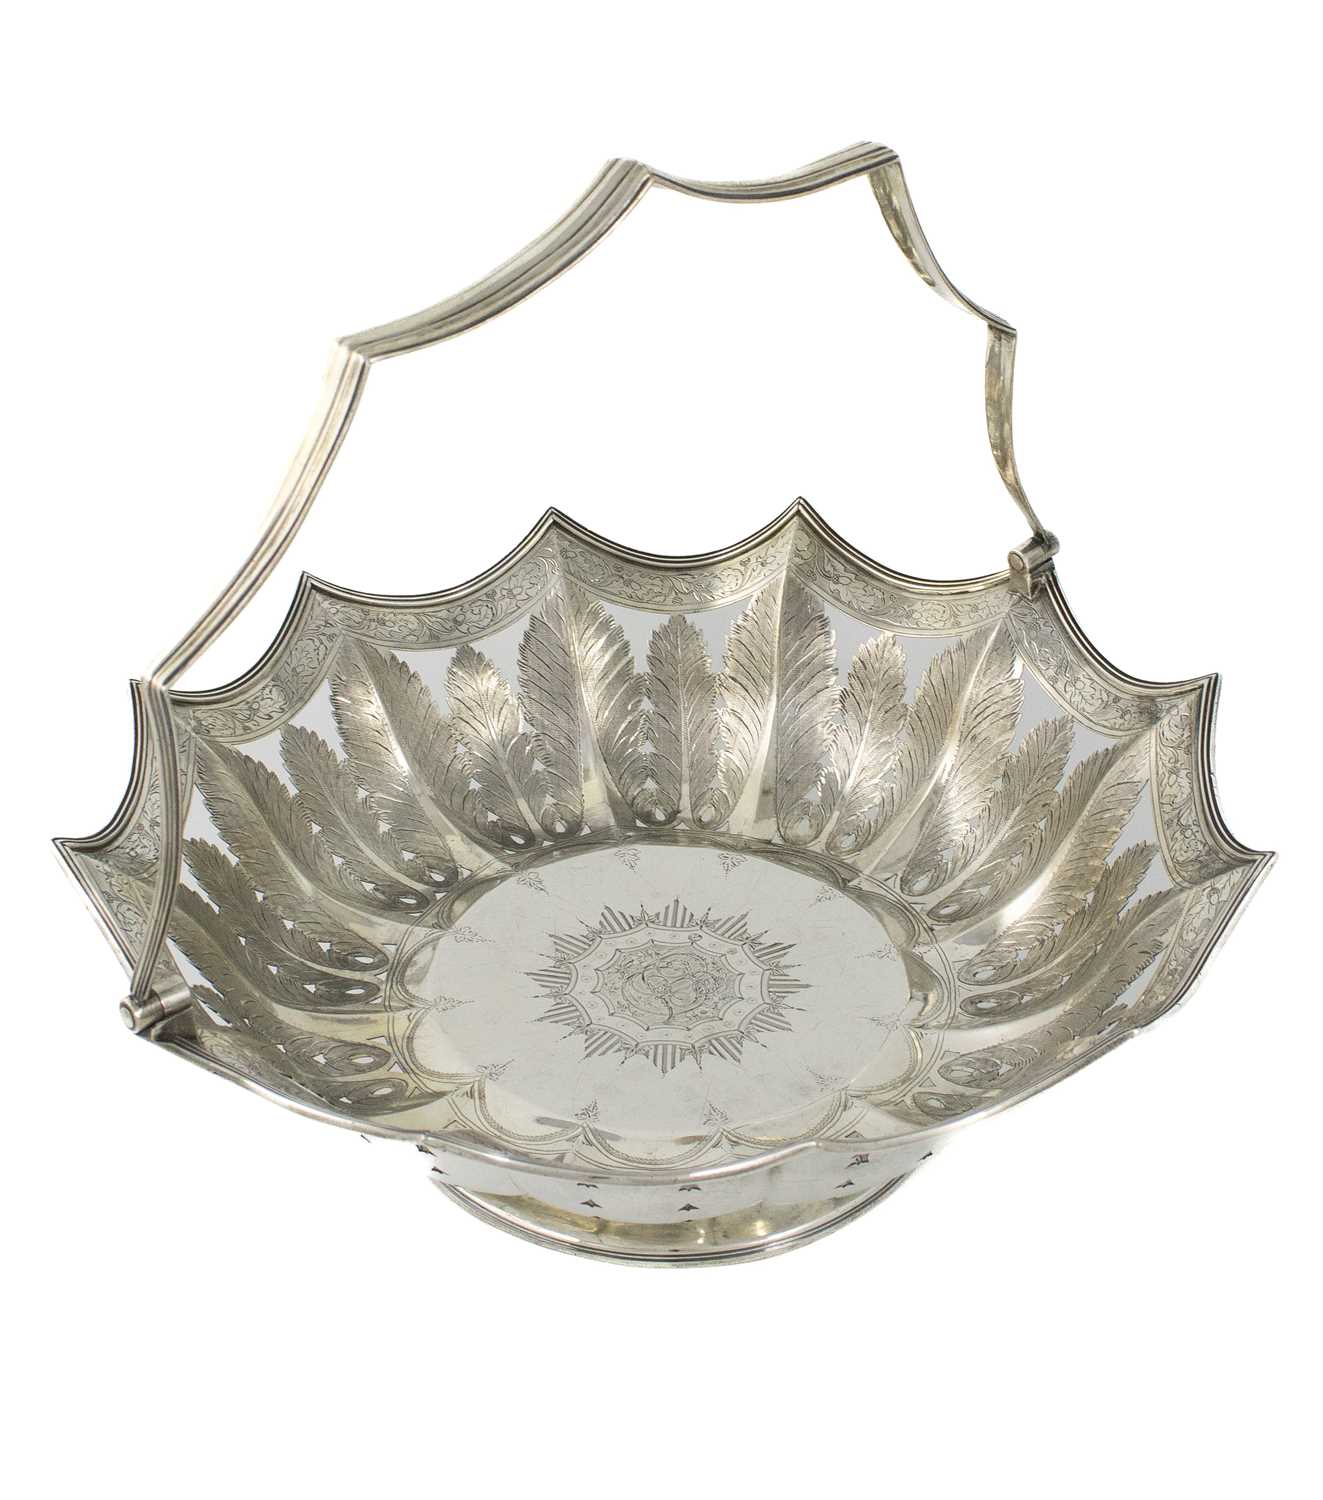 A George III silver swing-handled basket, (96138) maker's mark lost in piercing, London 1801,